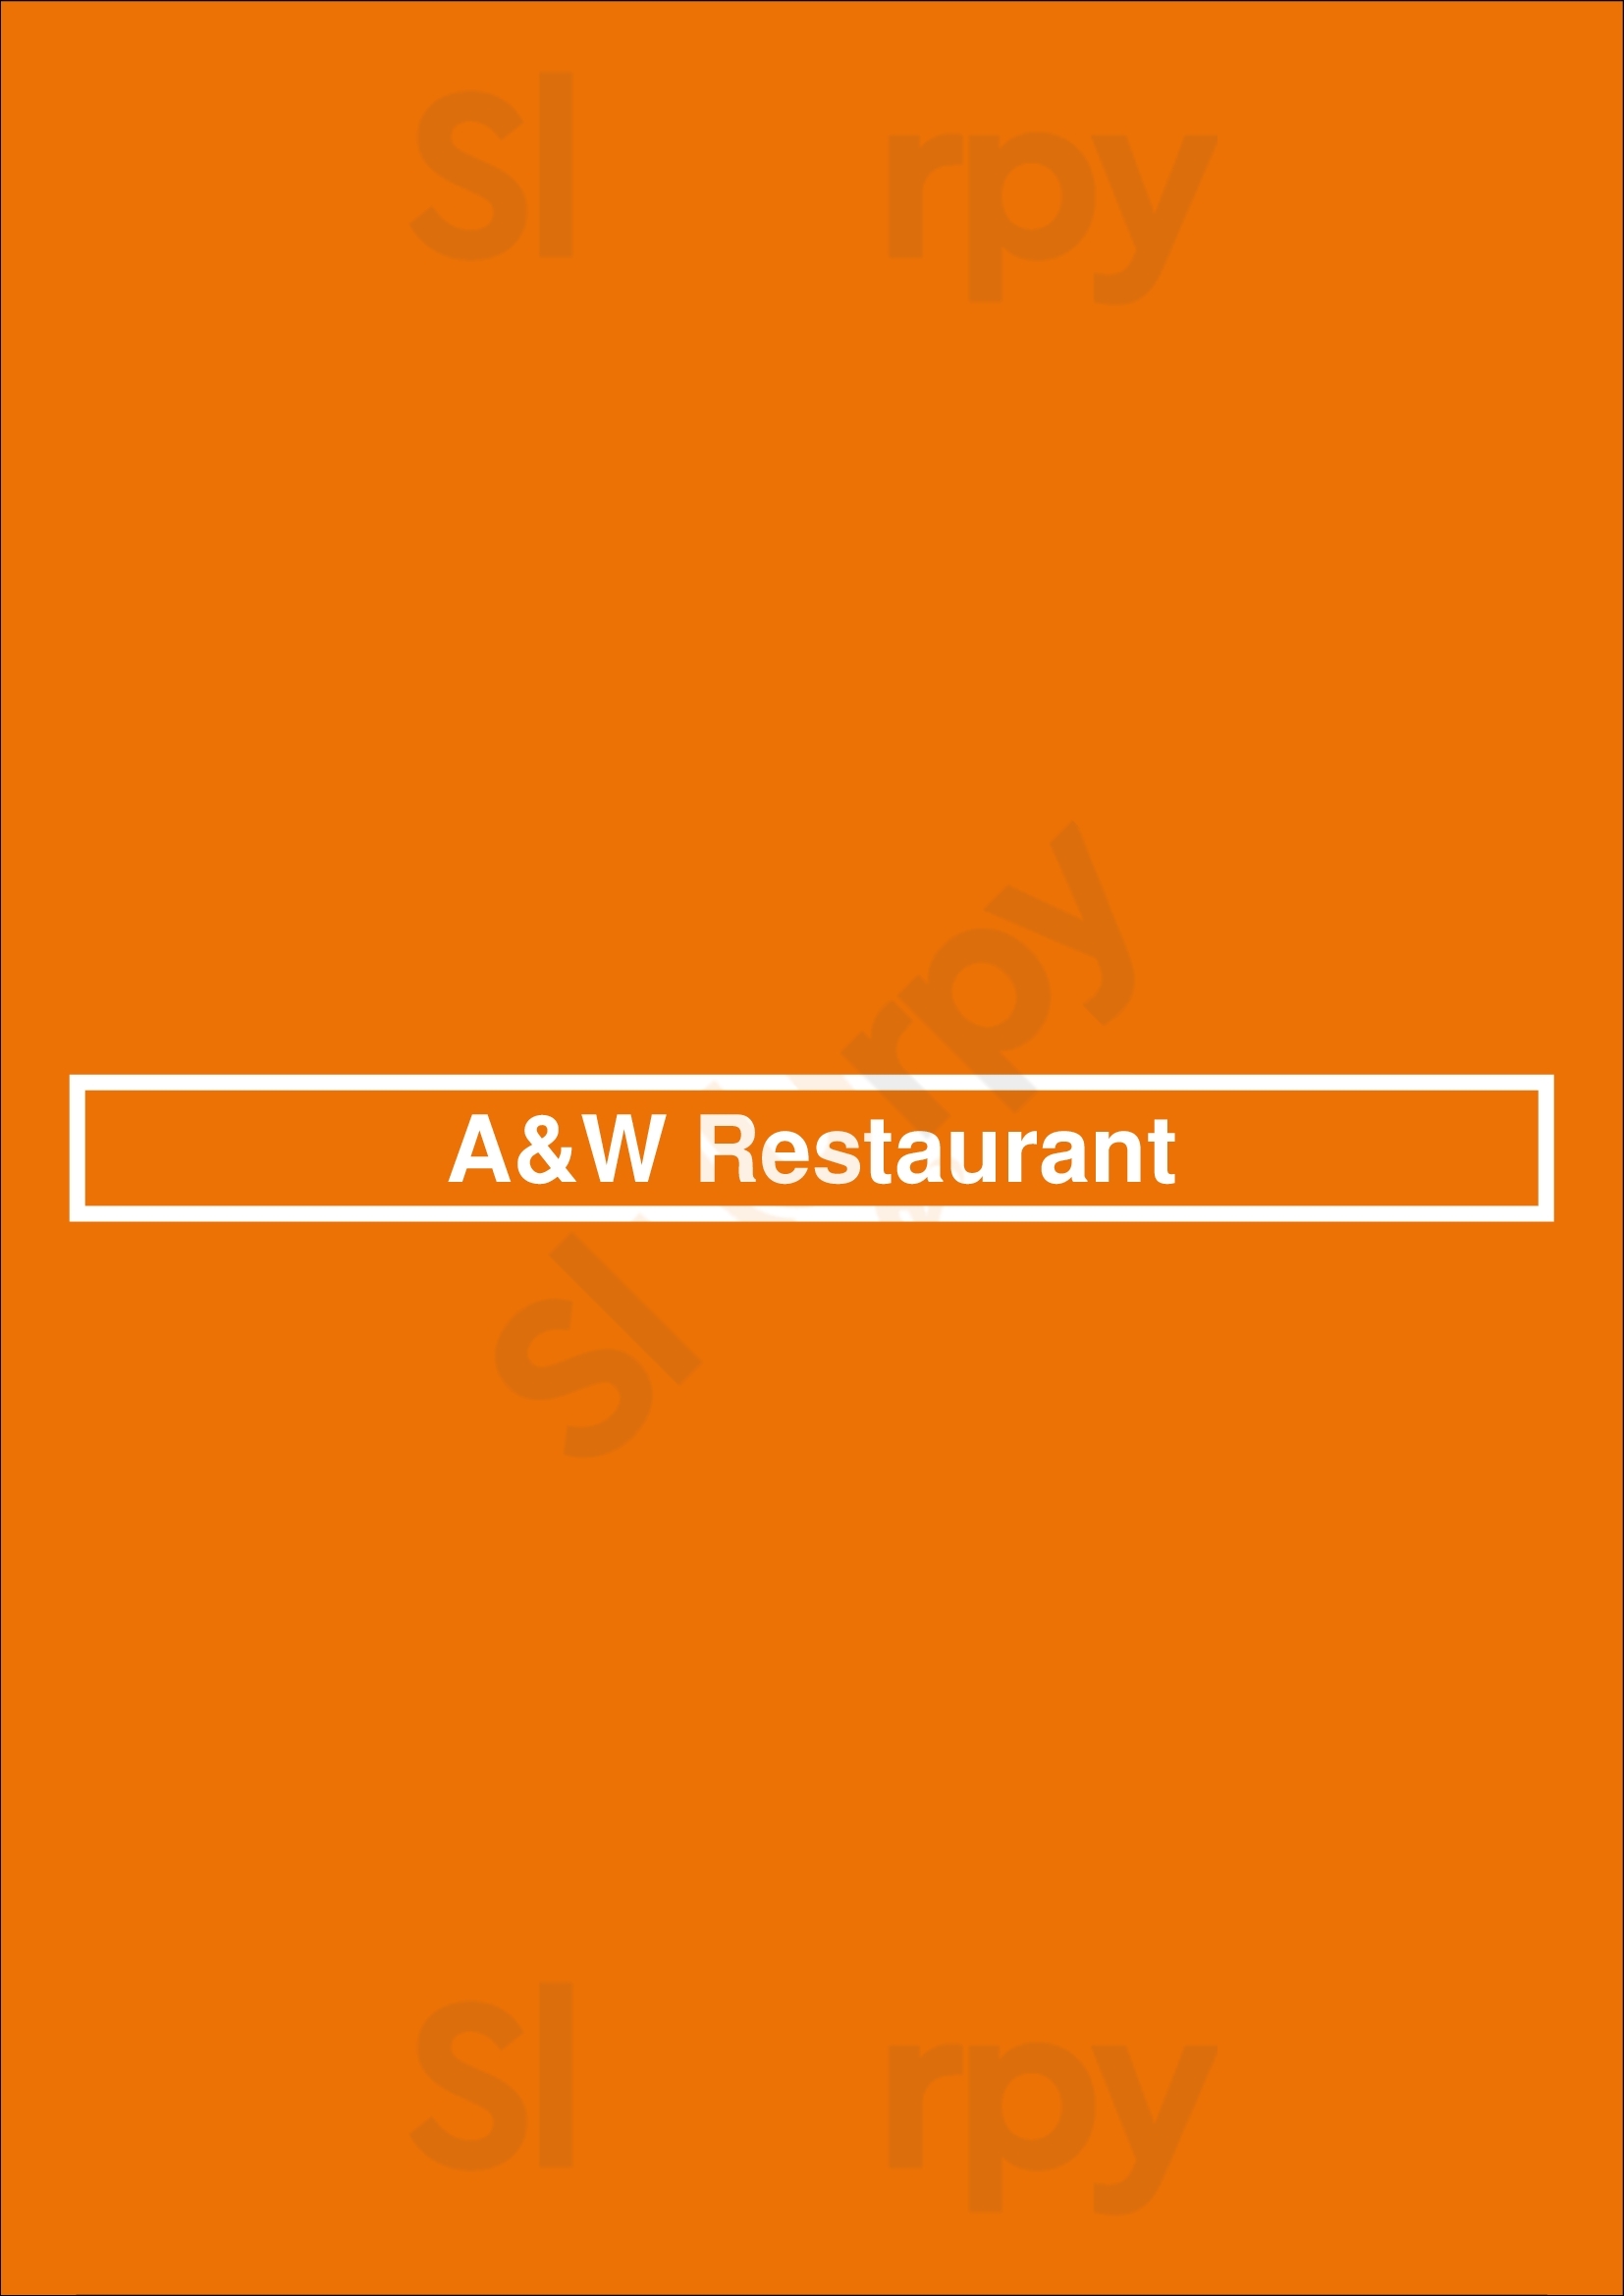 A&w Restaurant Red Deer Menu - 1